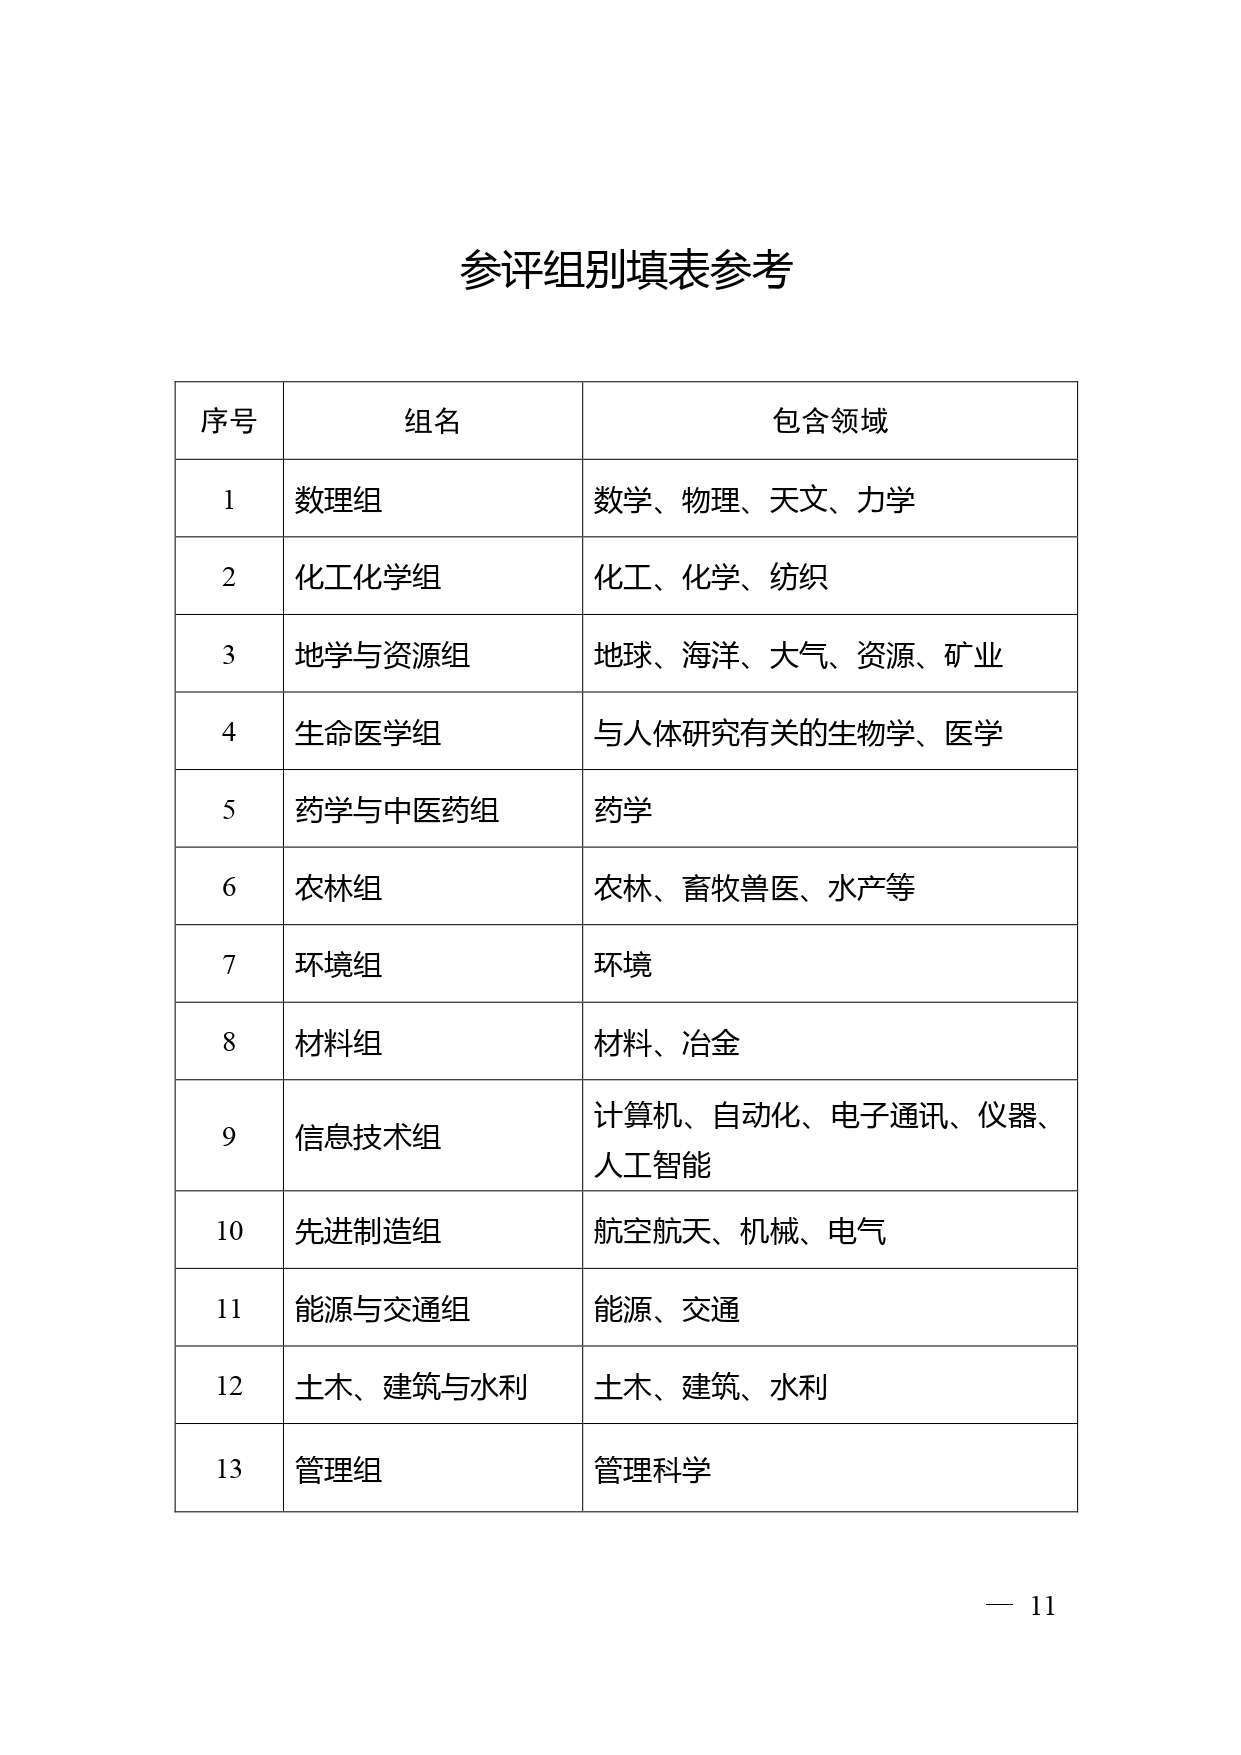 中国高等学校十大科技进展申报表 张可可终版3 page 0011